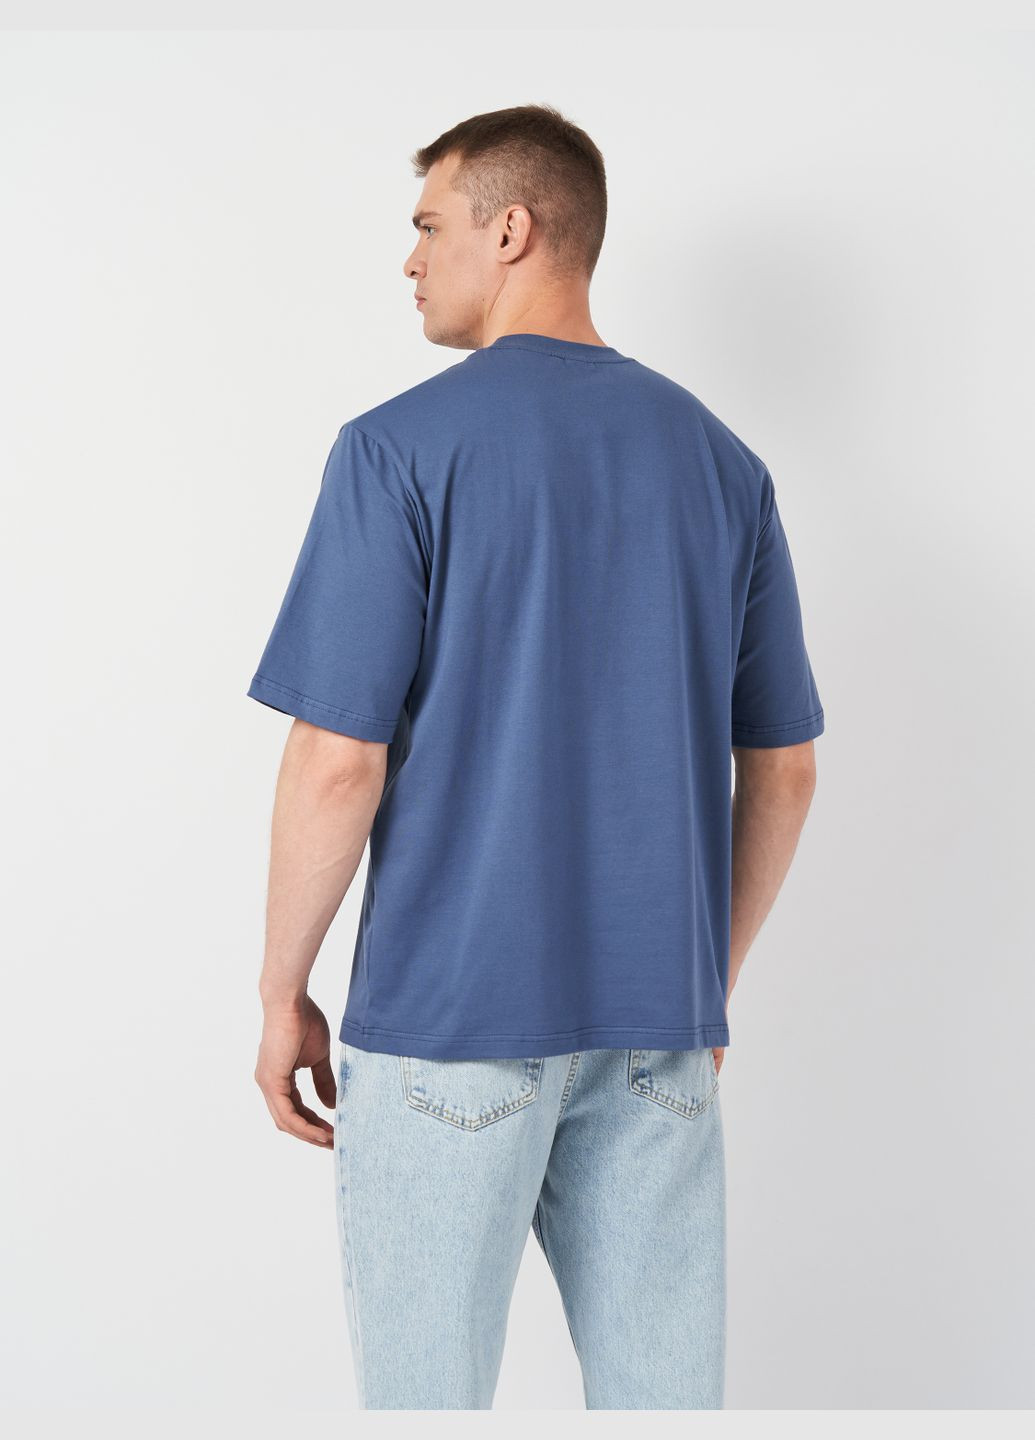 Синяя футболка мужская с коротким рукавом Роза